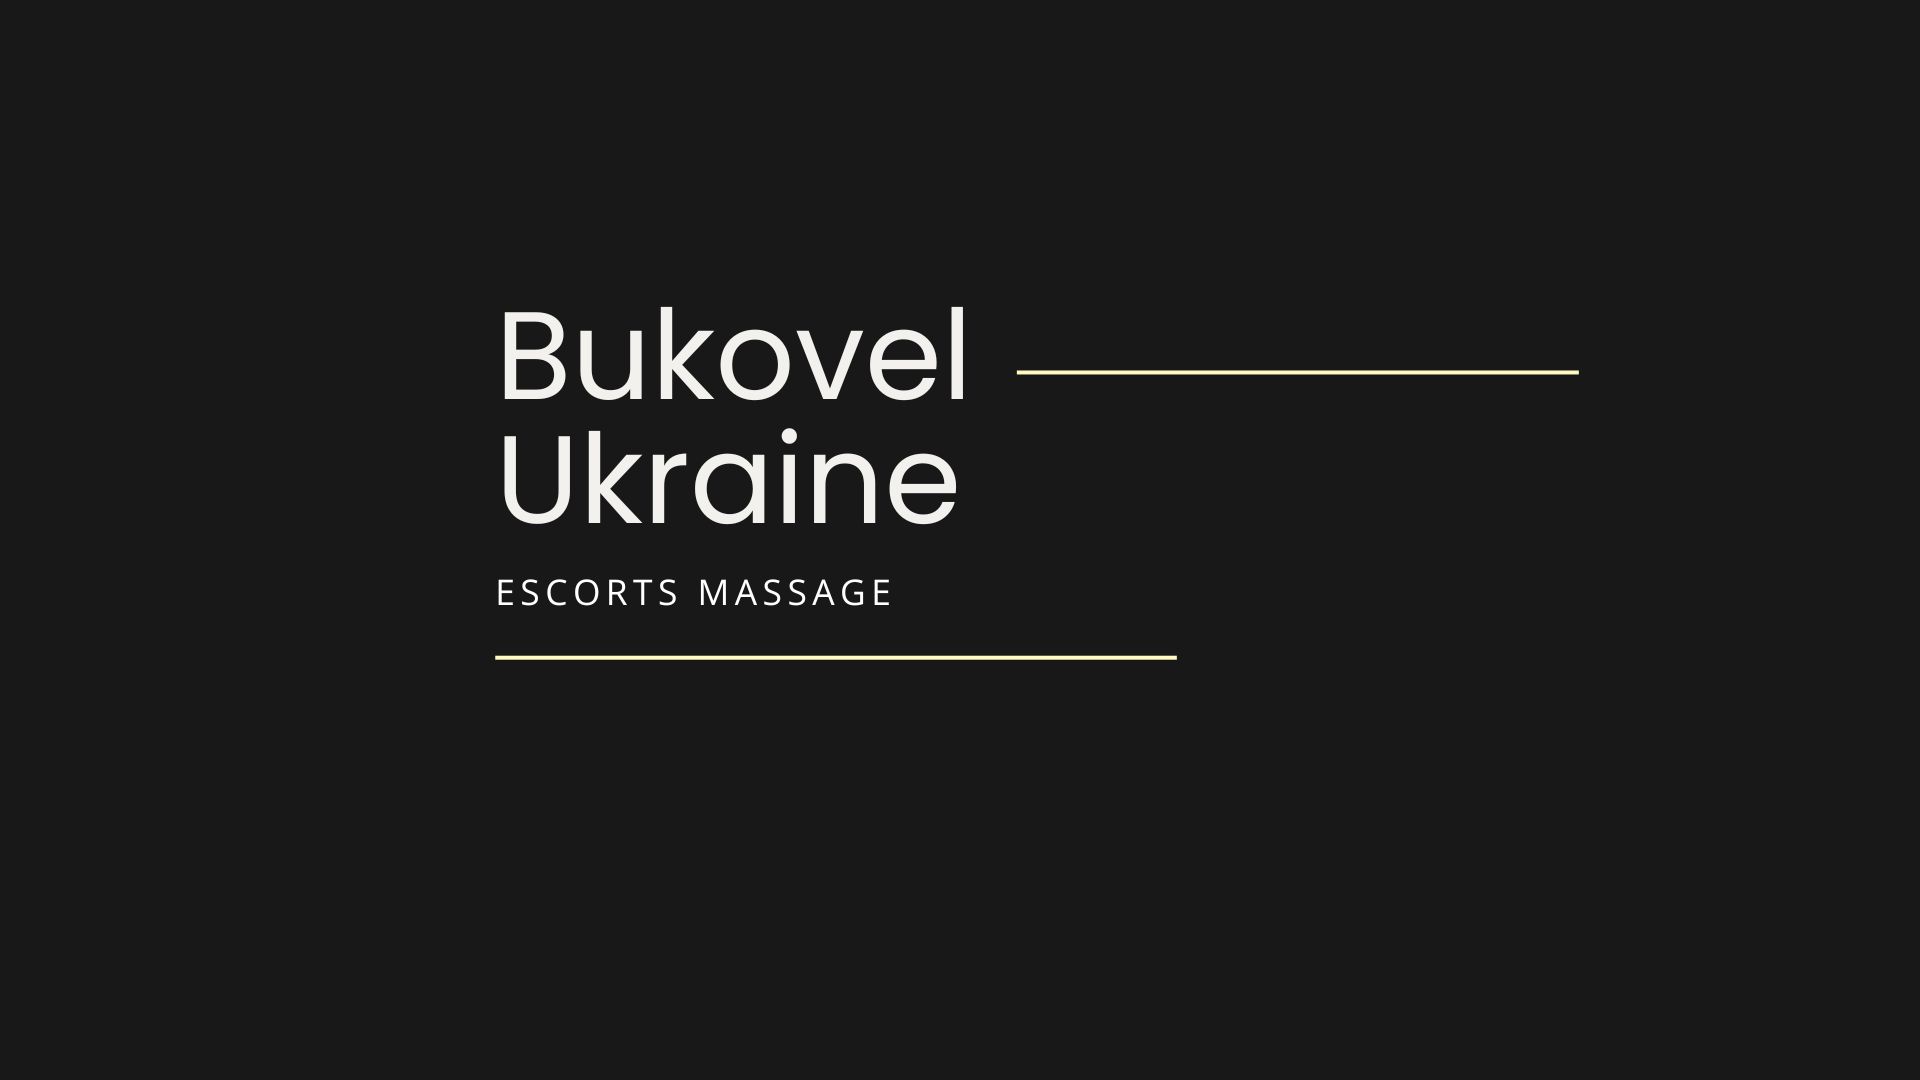 The best escort models of Ukraine and Europe for escort Bukovel